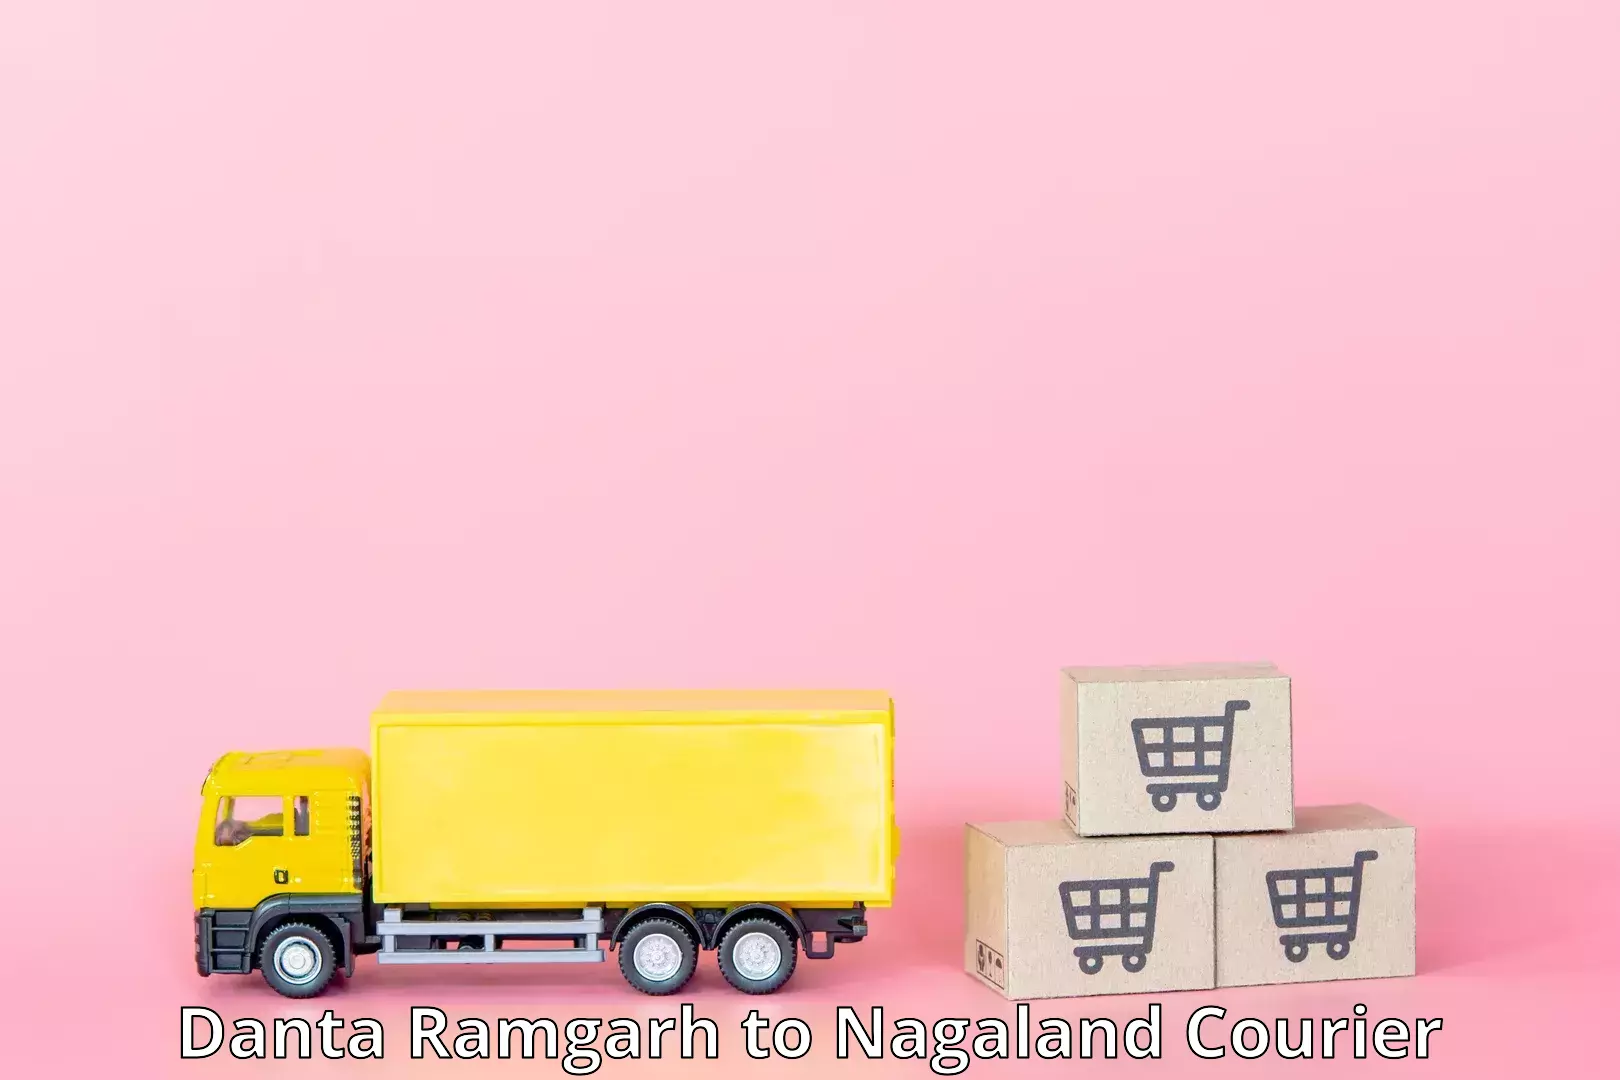 Premium delivery services Danta Ramgarh to Dimapur